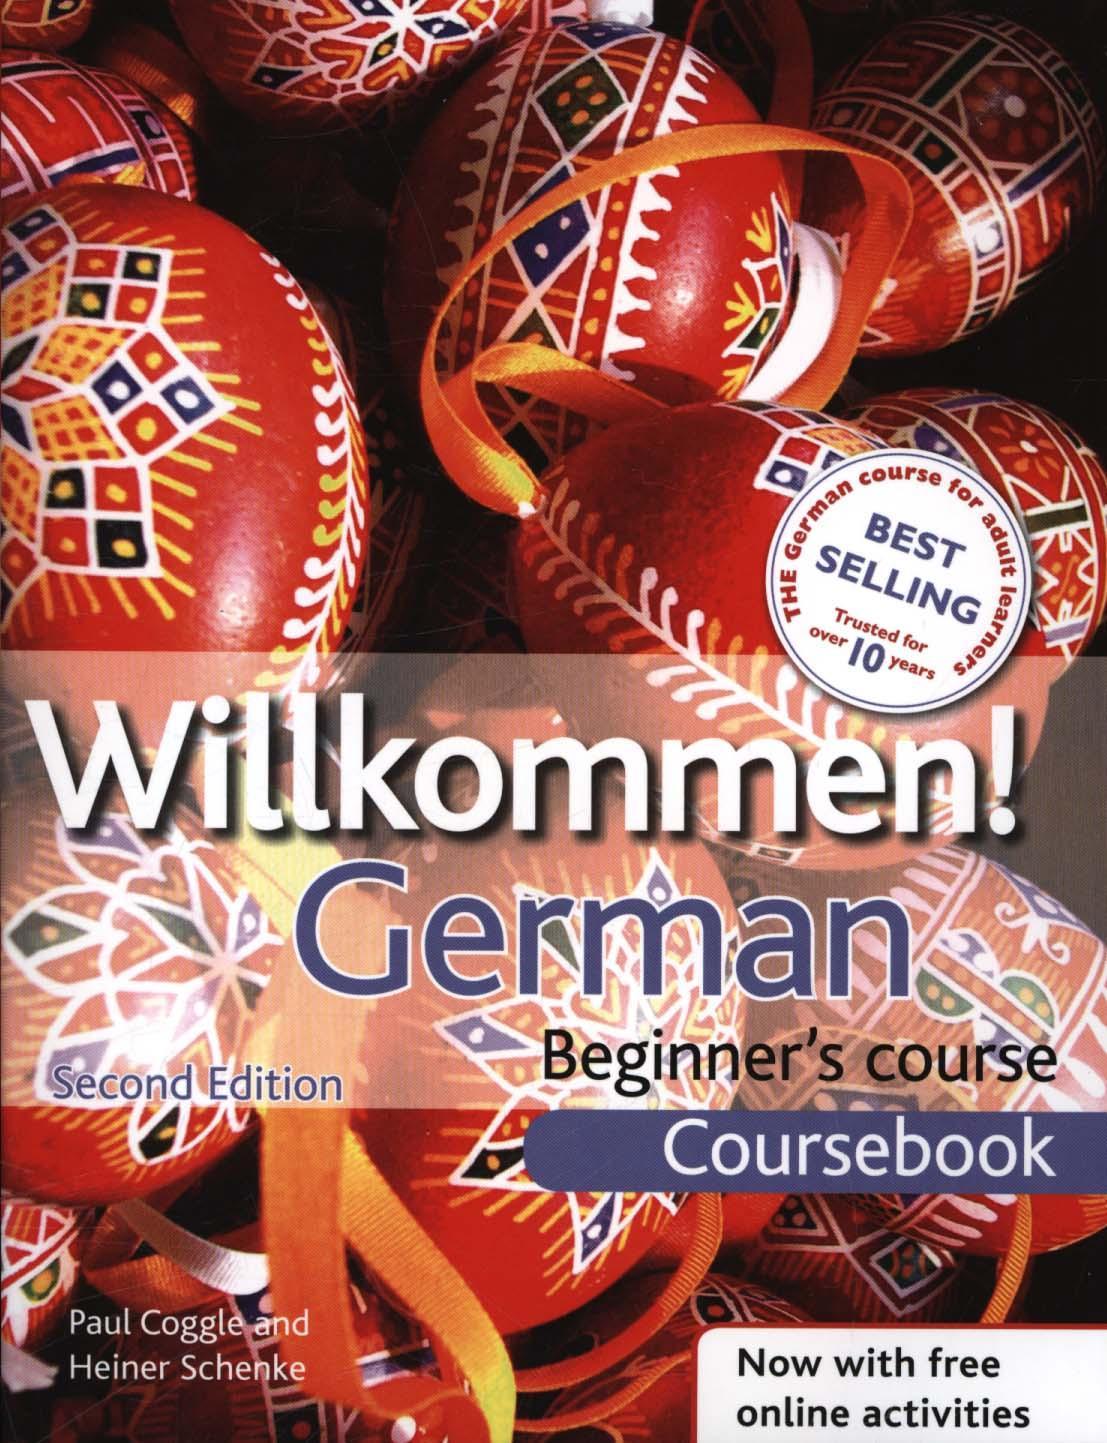 Willkommen German Beginner's Course: Coursebook